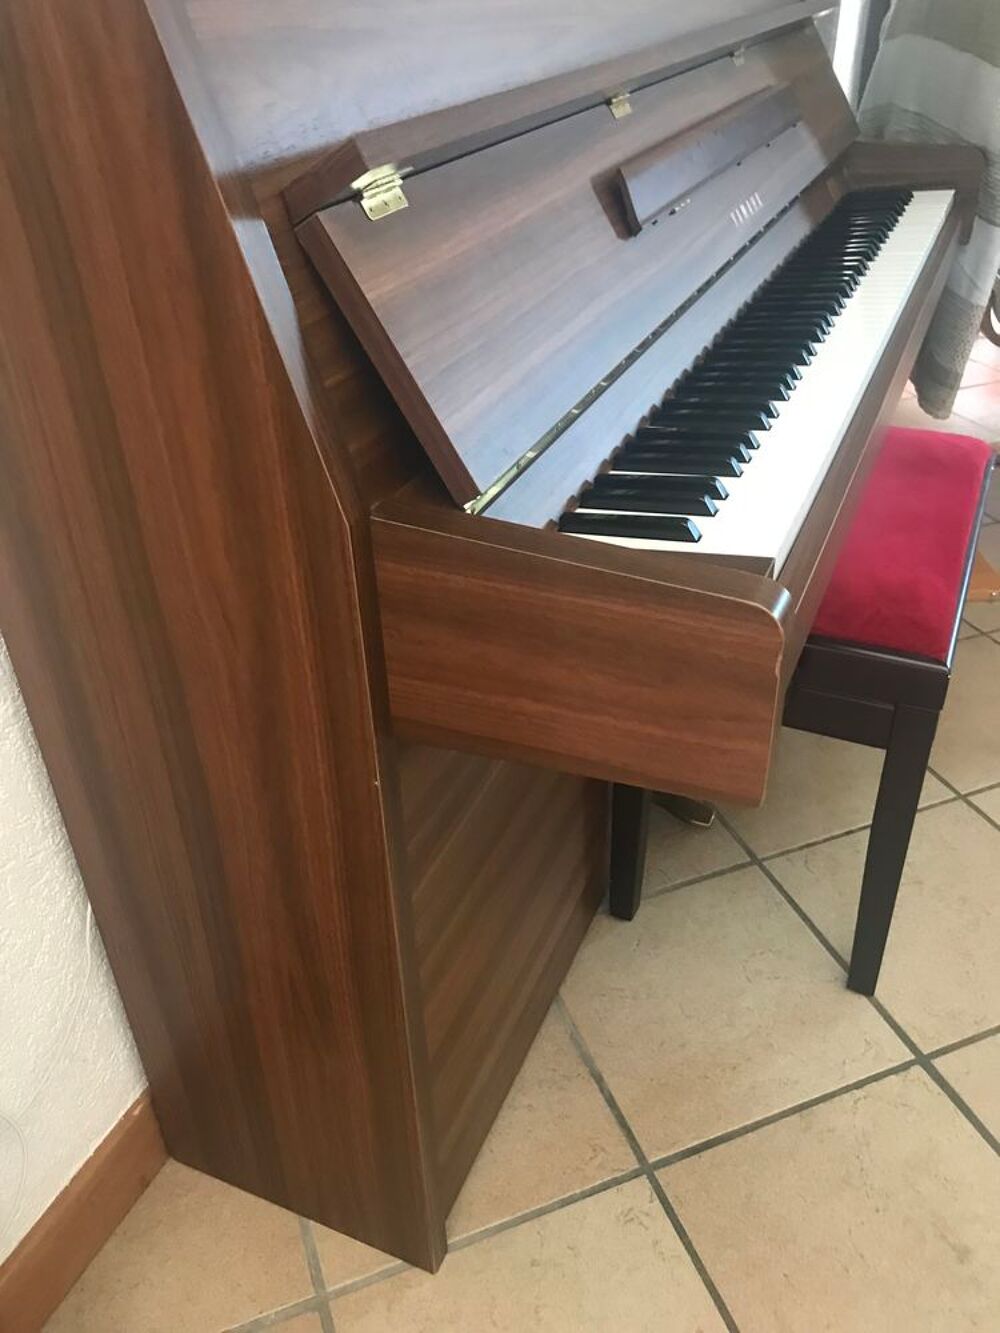 Piano acoustique Yamaha Instruments de musique